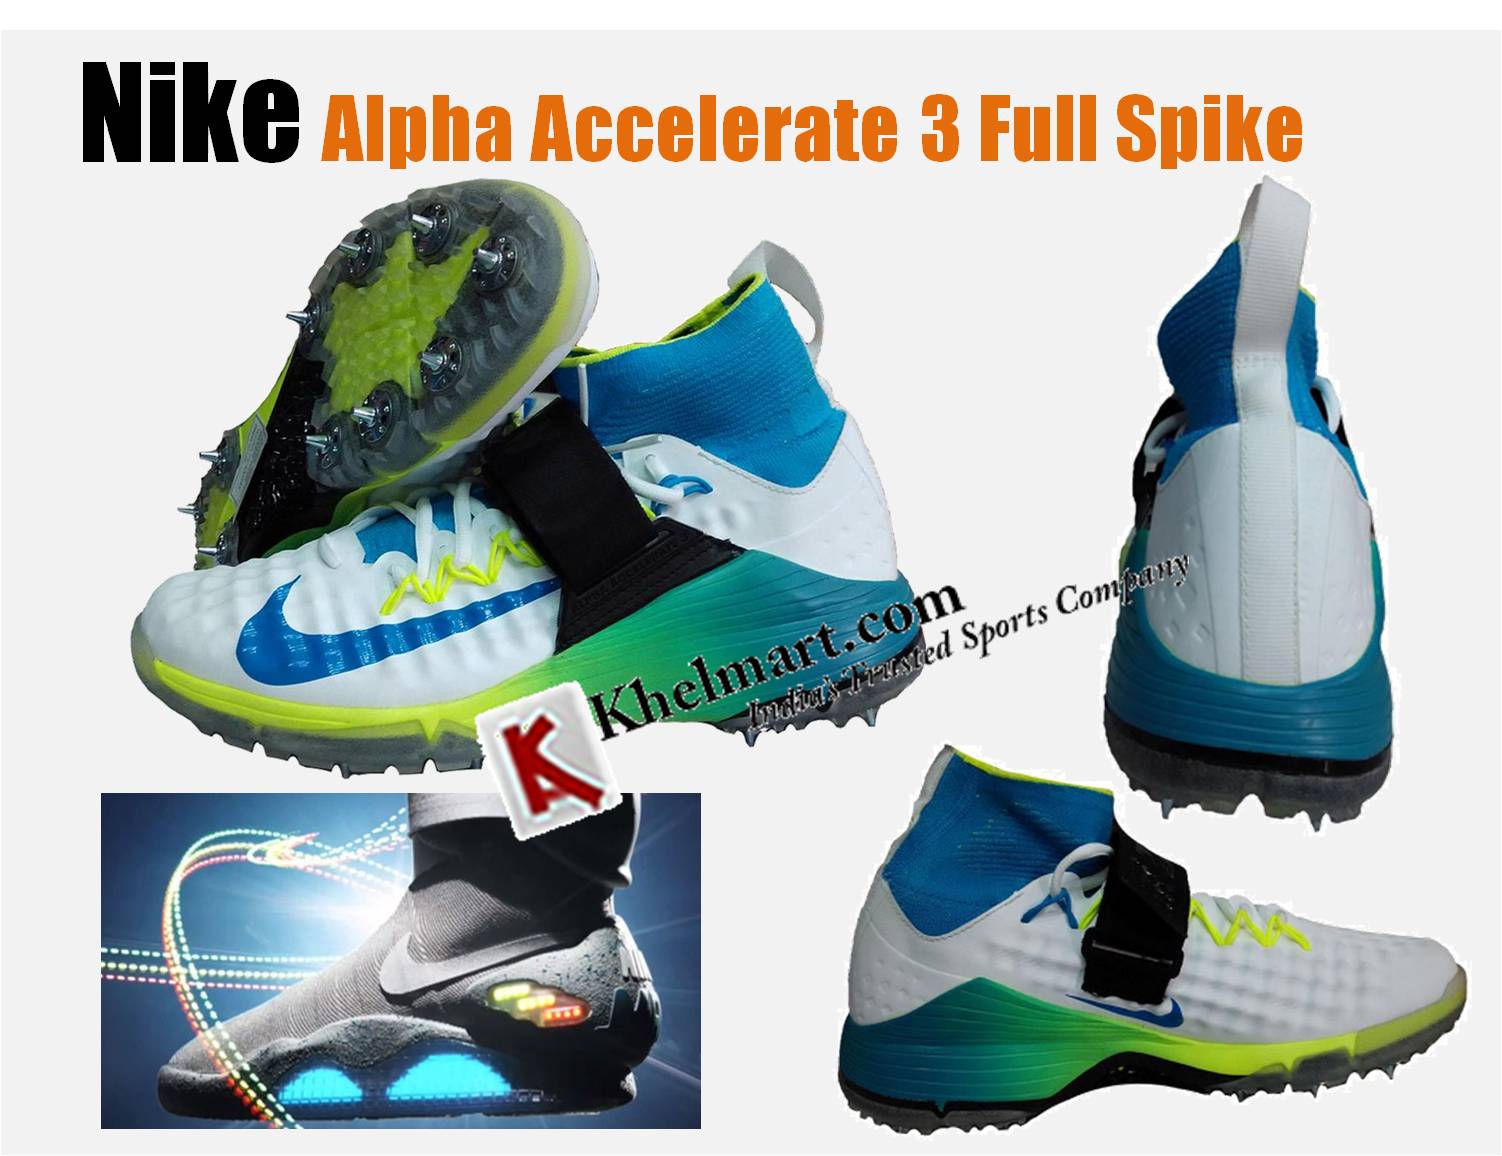 NIKE_Alpha_Accelerate_3_Full_Spike_Shoes.jpg 